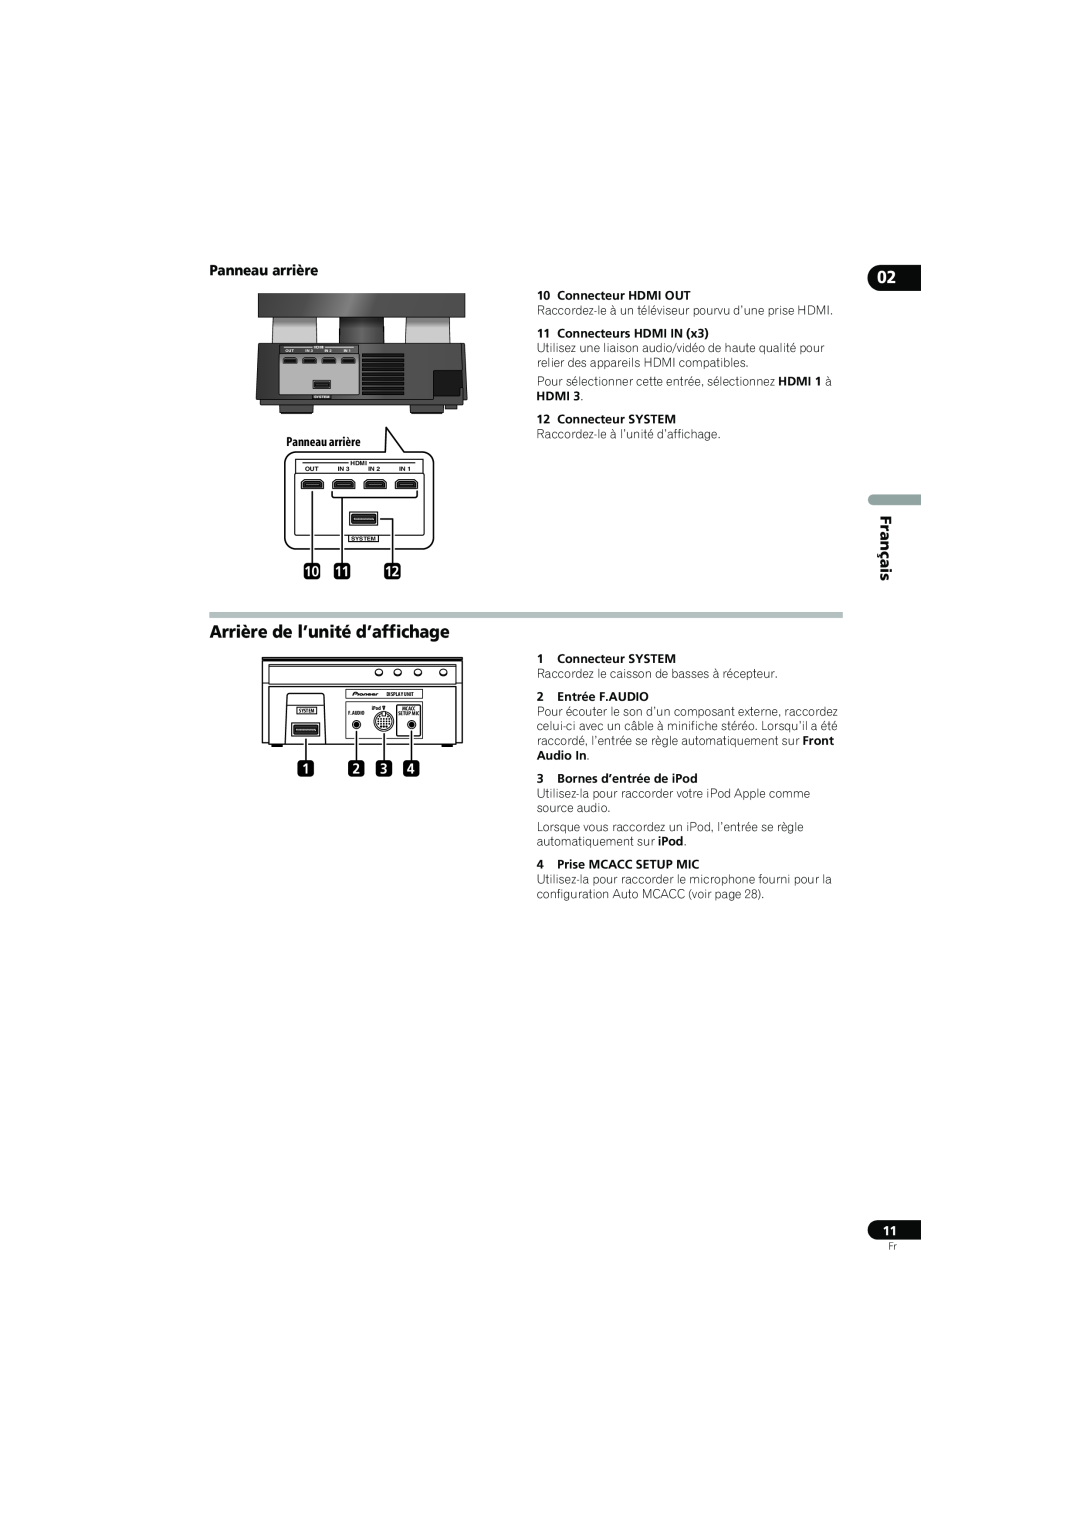 Pioneer SX-LX70SW Arrière de l’unité d’affichage, Panneau arrière, Français, 1 2 3, Connecteur HDMI OUT, Connecteur SYSTEM 